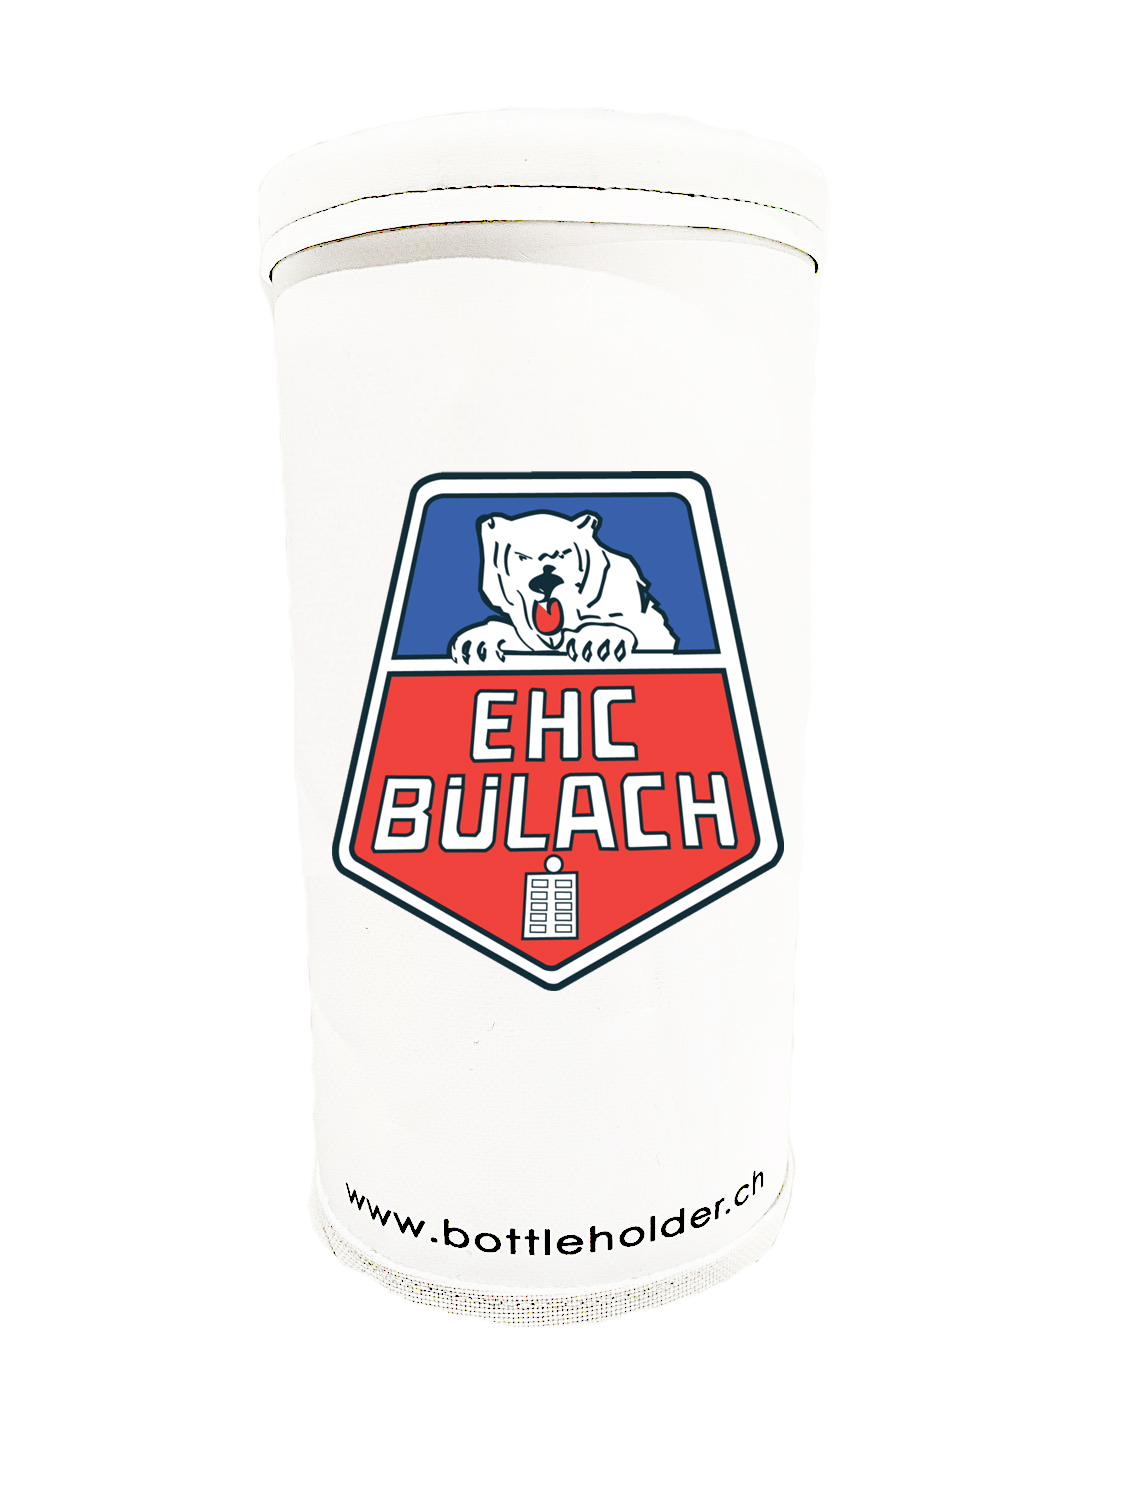 EHC Bülach  Bottleholder